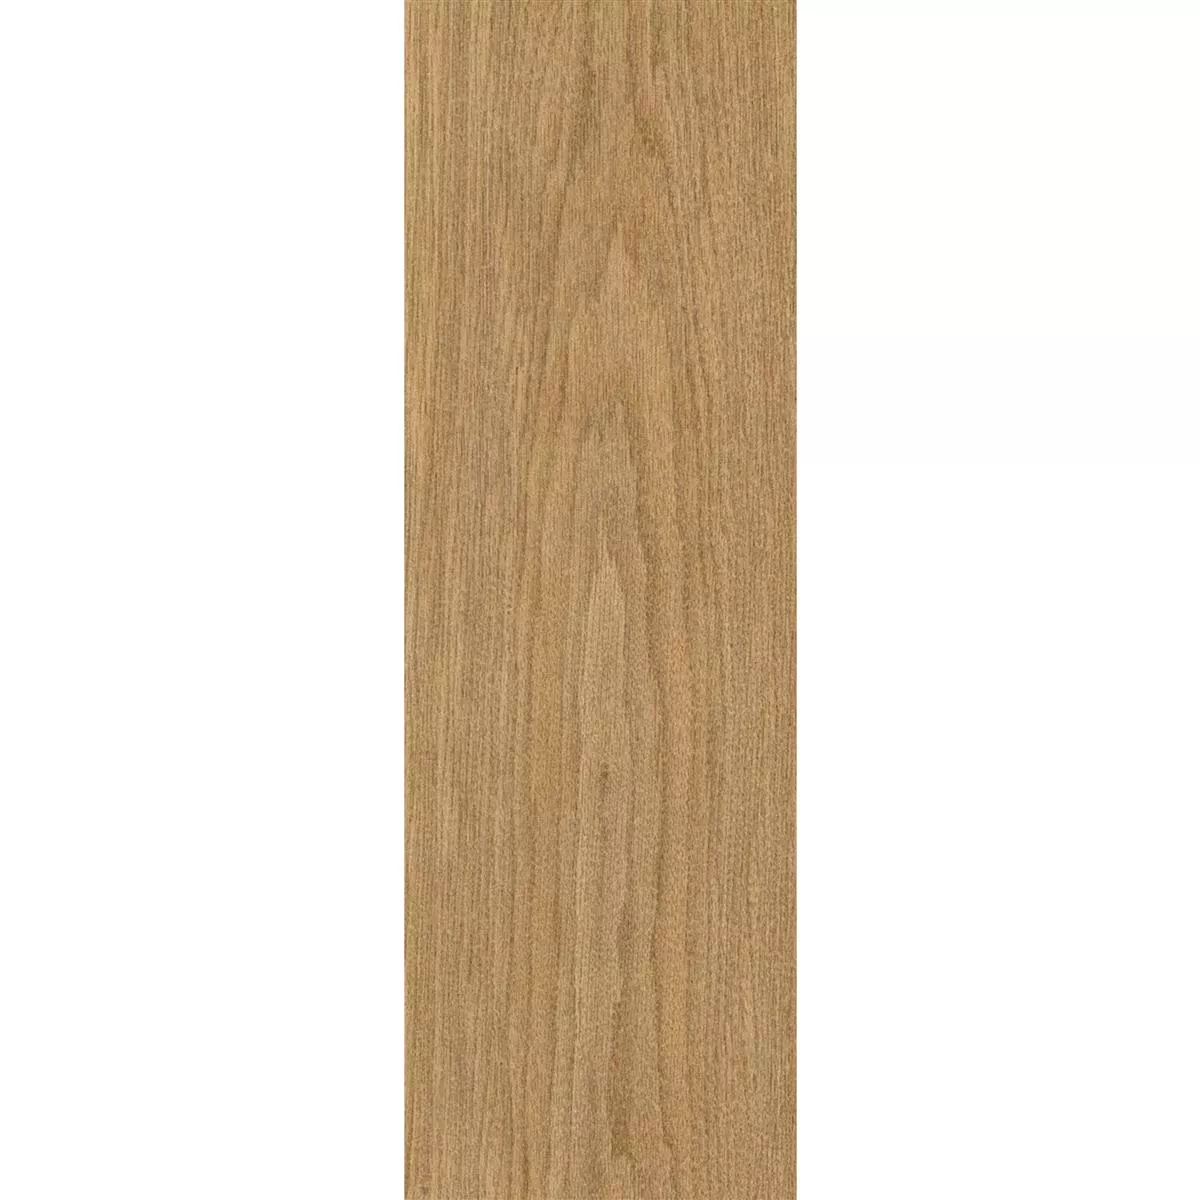 Płytki Podłogowe Wygląd Drewna Lavrio Brązowy 20x120cm